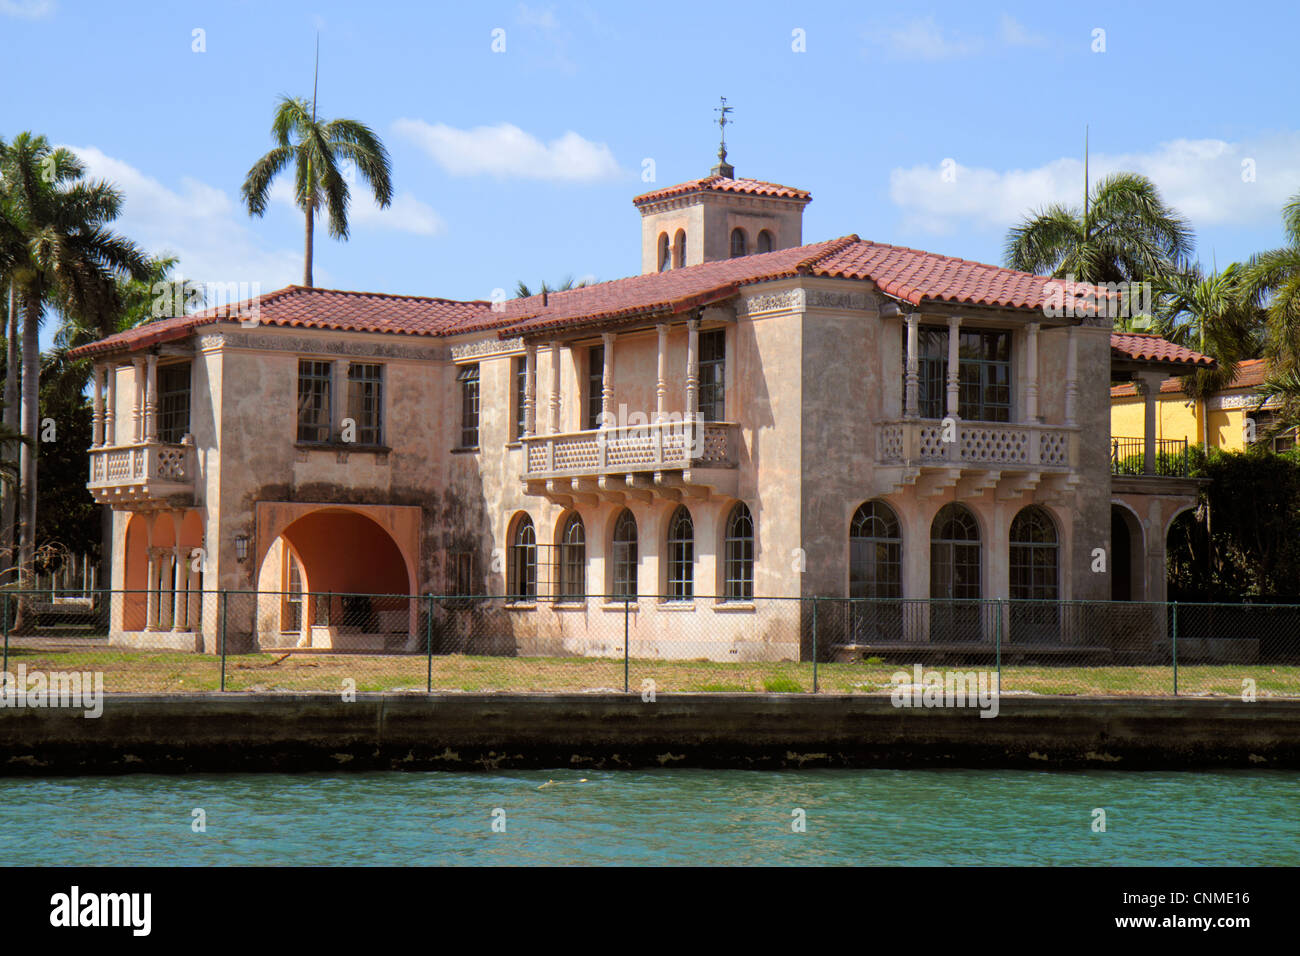 Miami Beach Florida, Biscayne Bay, Star Island, 22 Star Island Drive, Haus am Wasser, Herrenhaus, Berühmtheit, ältestes Haus auf der Insel, FL120331121 Stockfoto